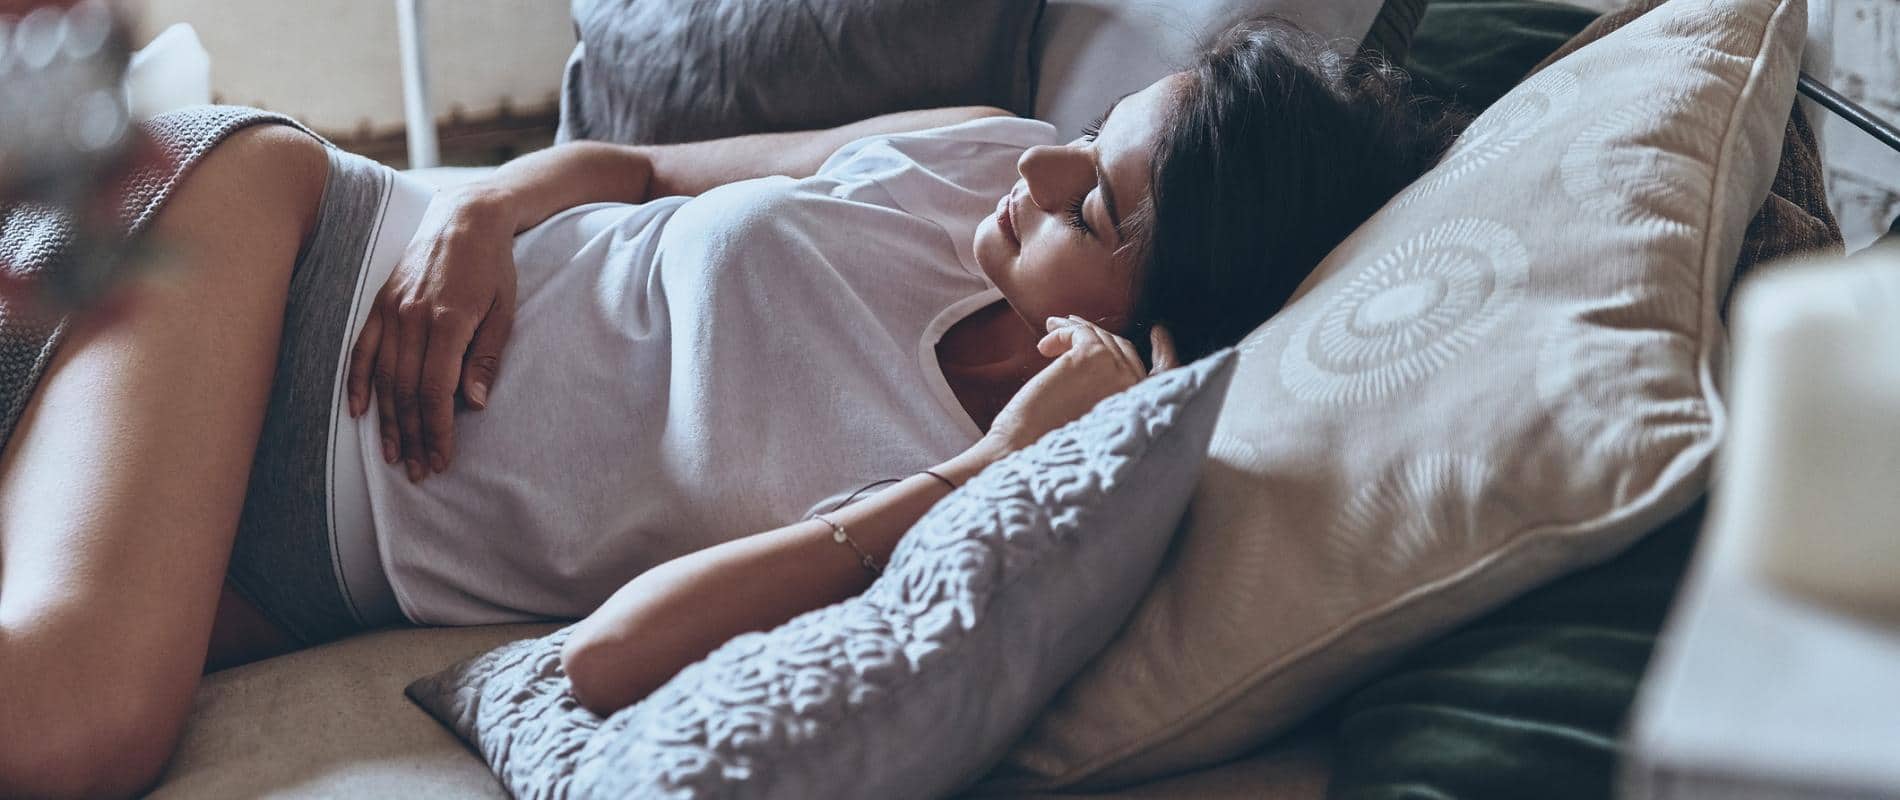 Santé: Dormir sans culotte vous préserve de beaucoup de risques